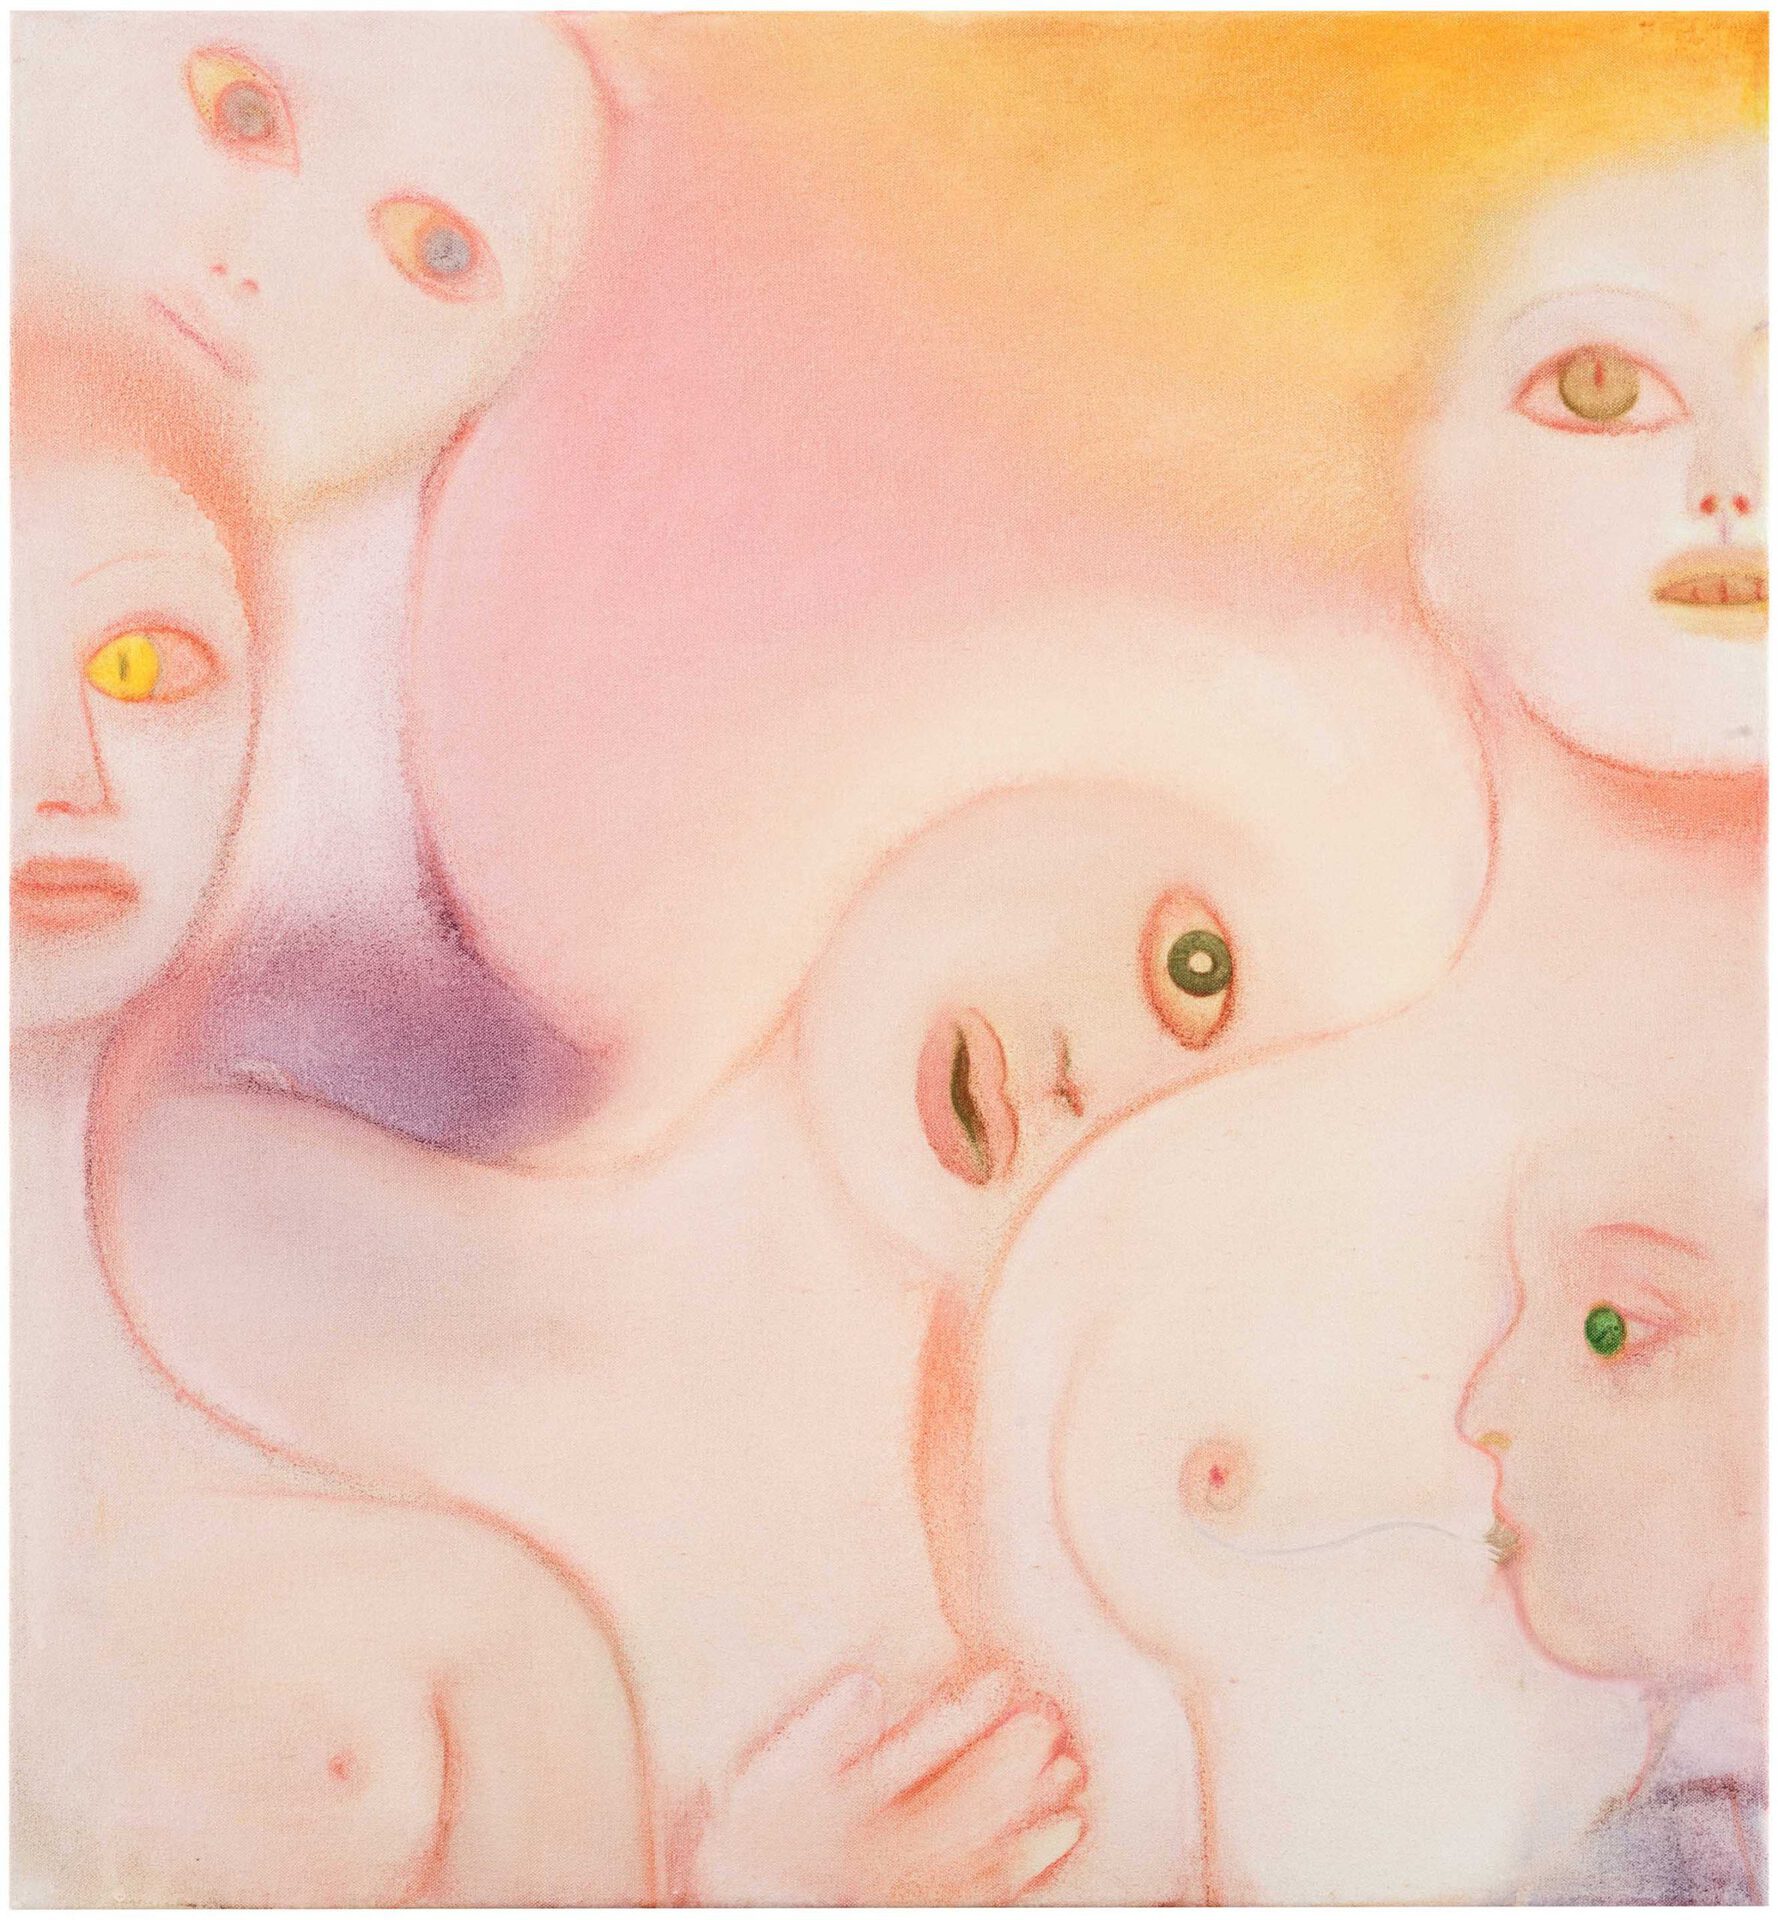 Mari Sunna, Share, 2020, oil on canvas, 70 x 66 cm